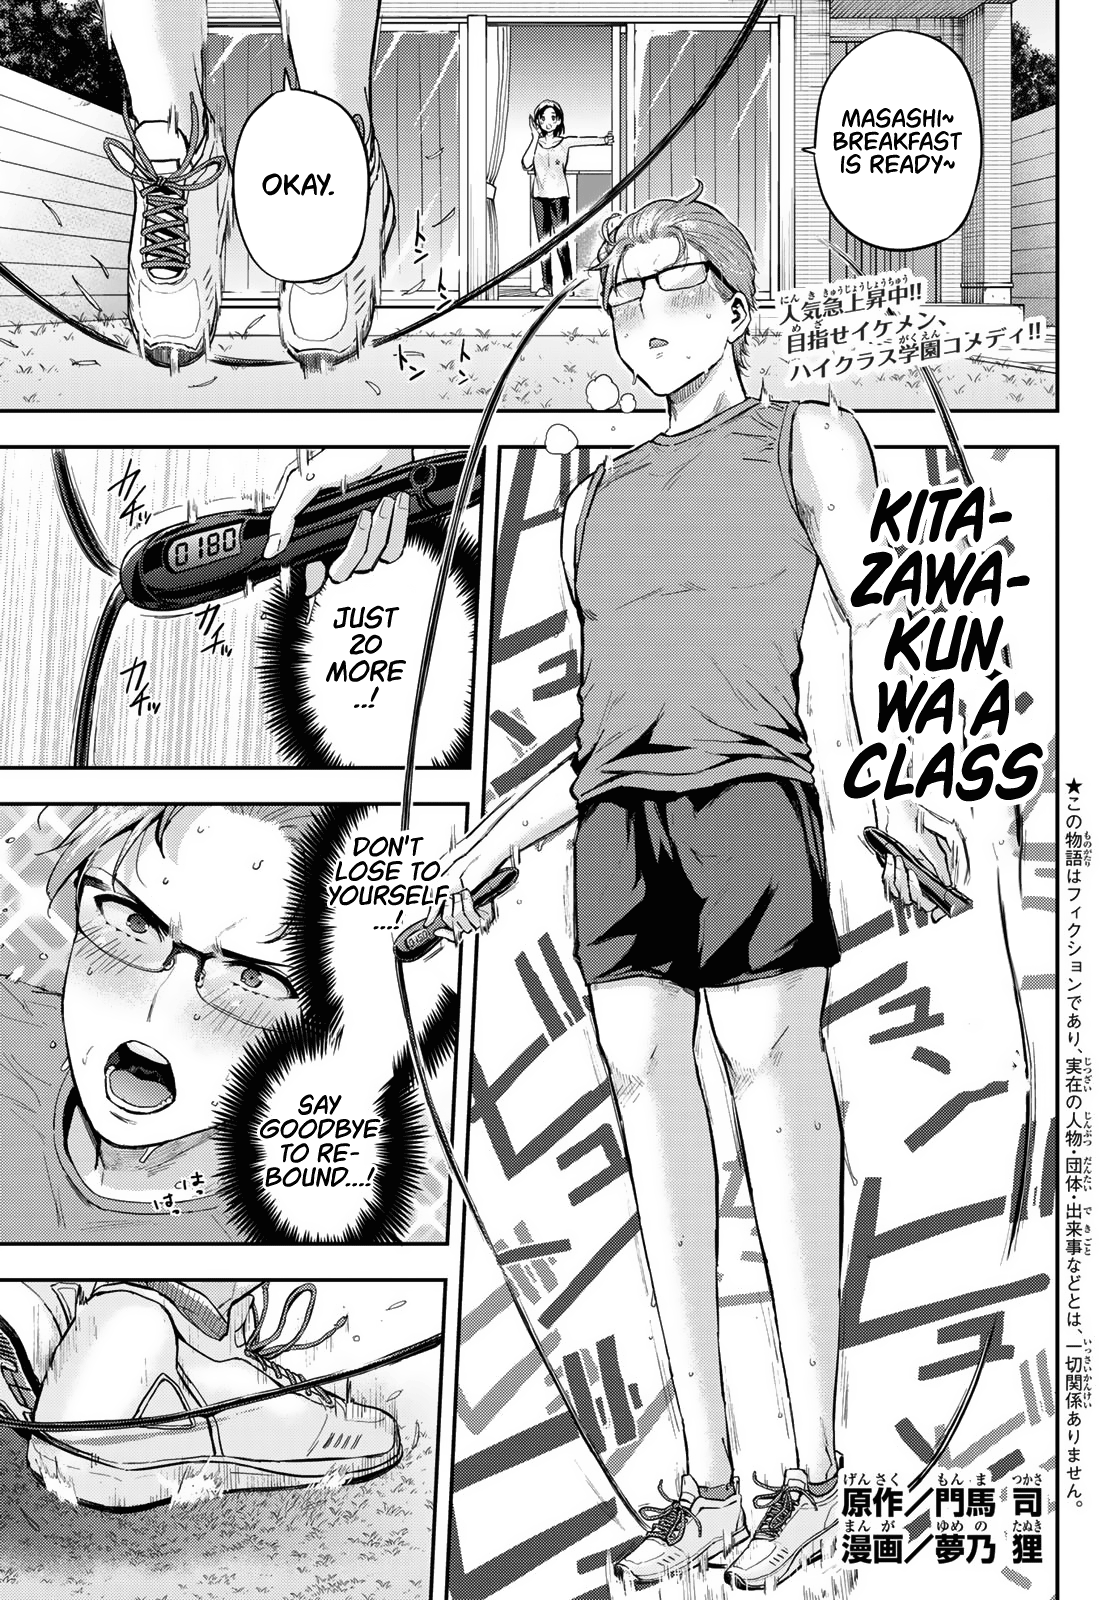 Kitazawa-Kun Wa A Class - Page 1